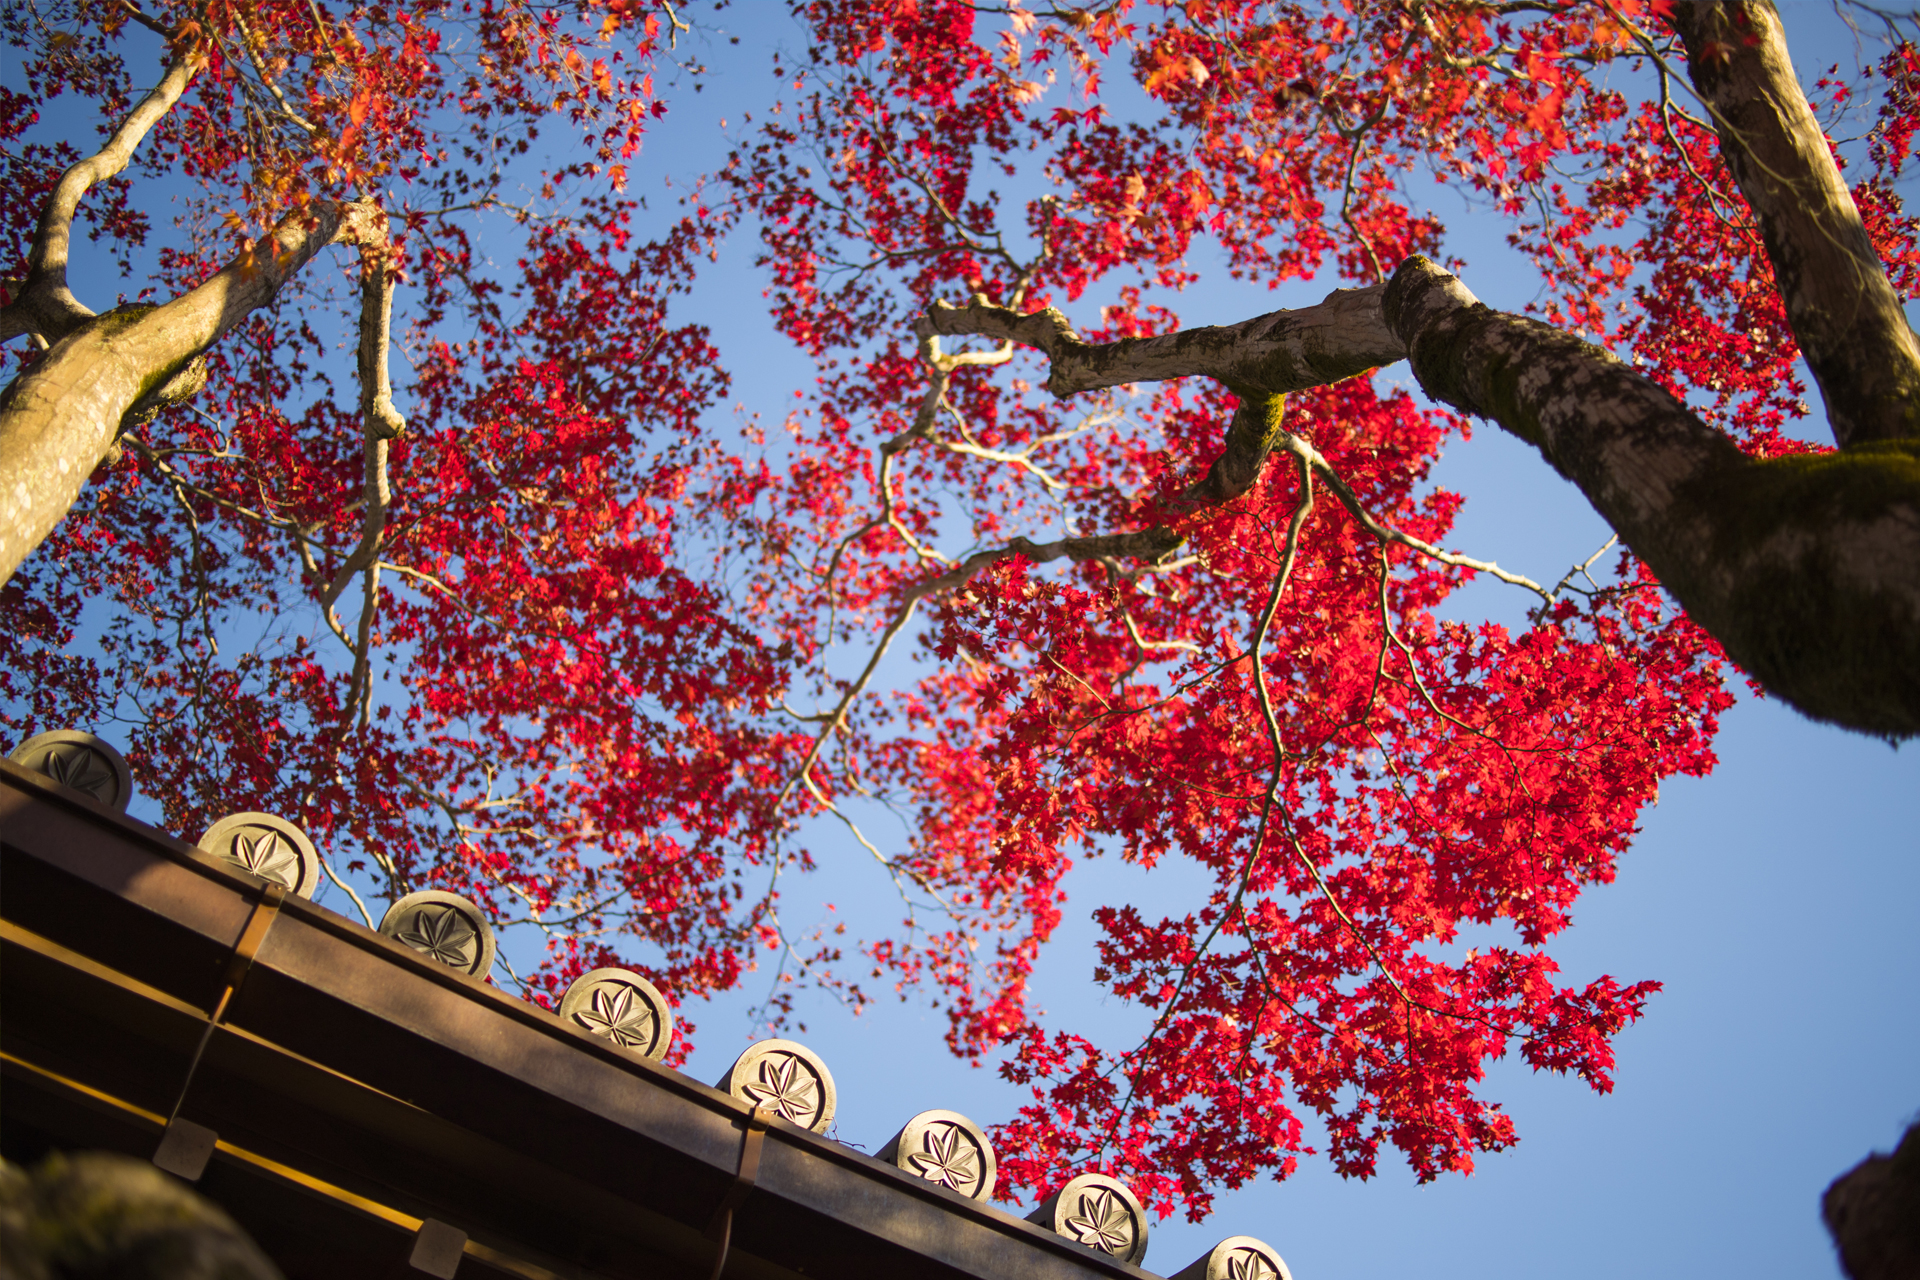 京都の紅葉が最も美しい12月 服装選びを工夫して観光をより楽しむポイントをご紹介します Caedekyoto カエデ京都 紅葉と伝統美を引き継ぐバッグ